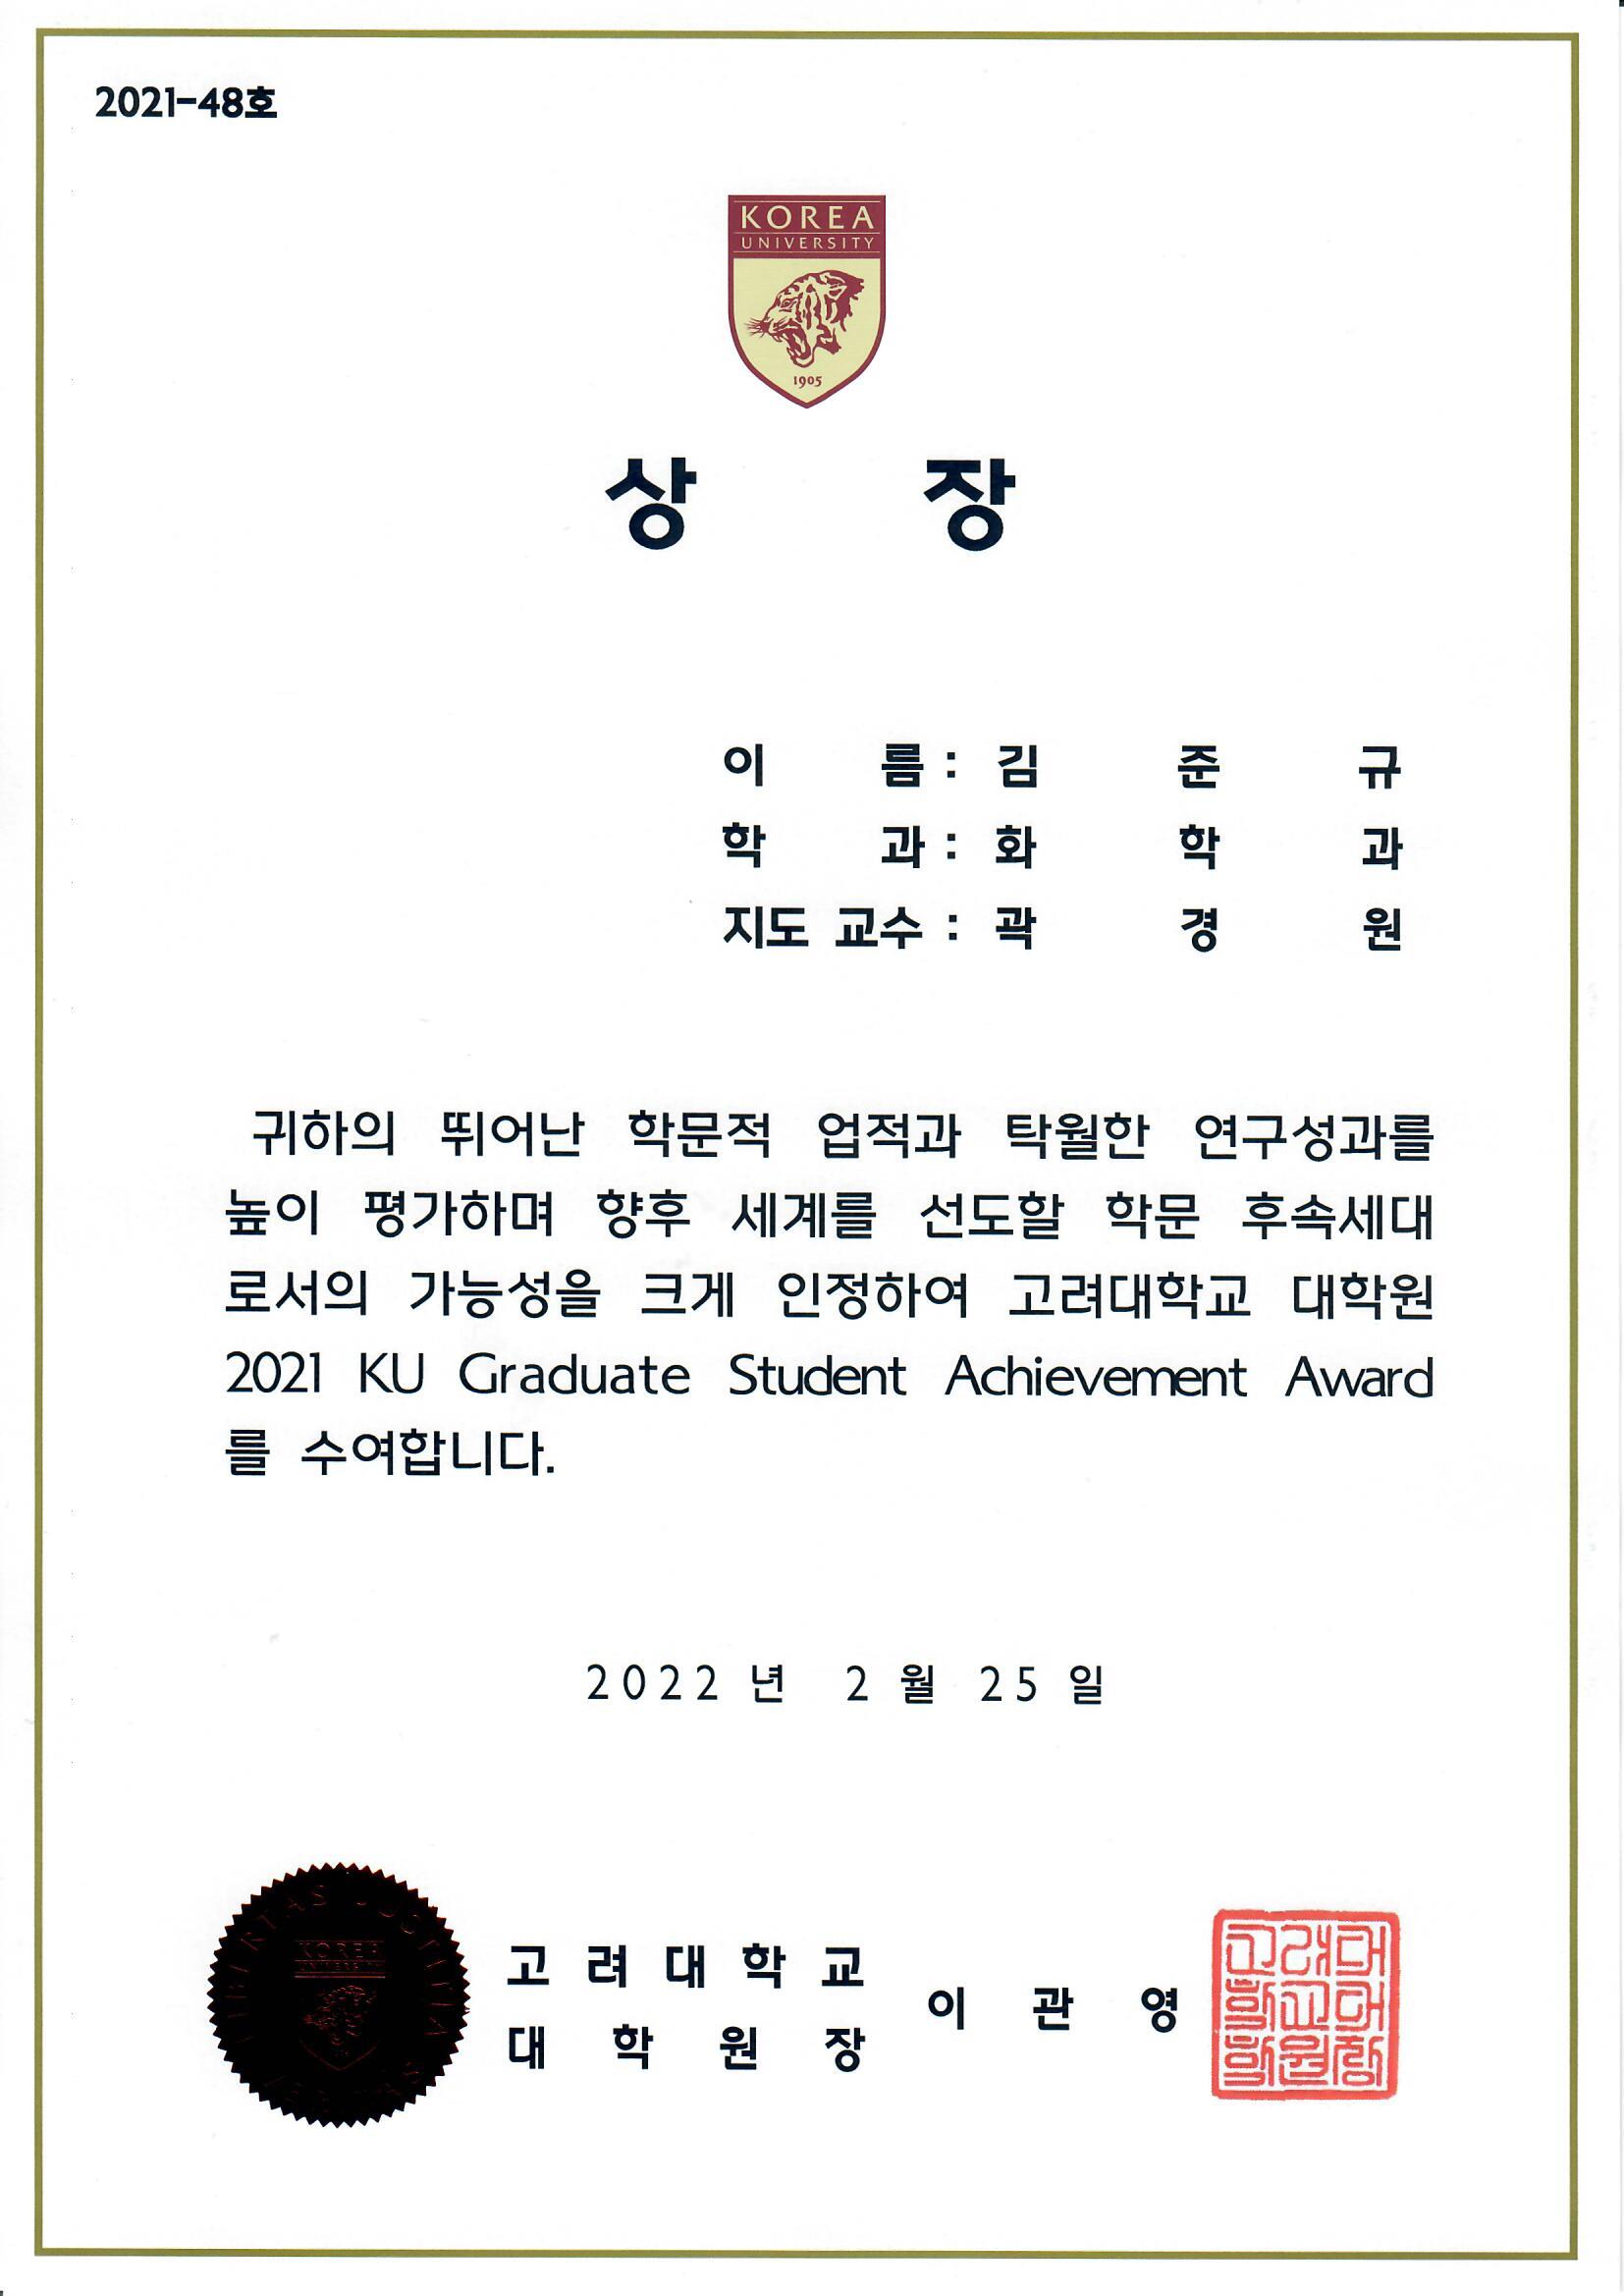 2021 KU Graduate Student Achievement Award! (Jungyu Kim)